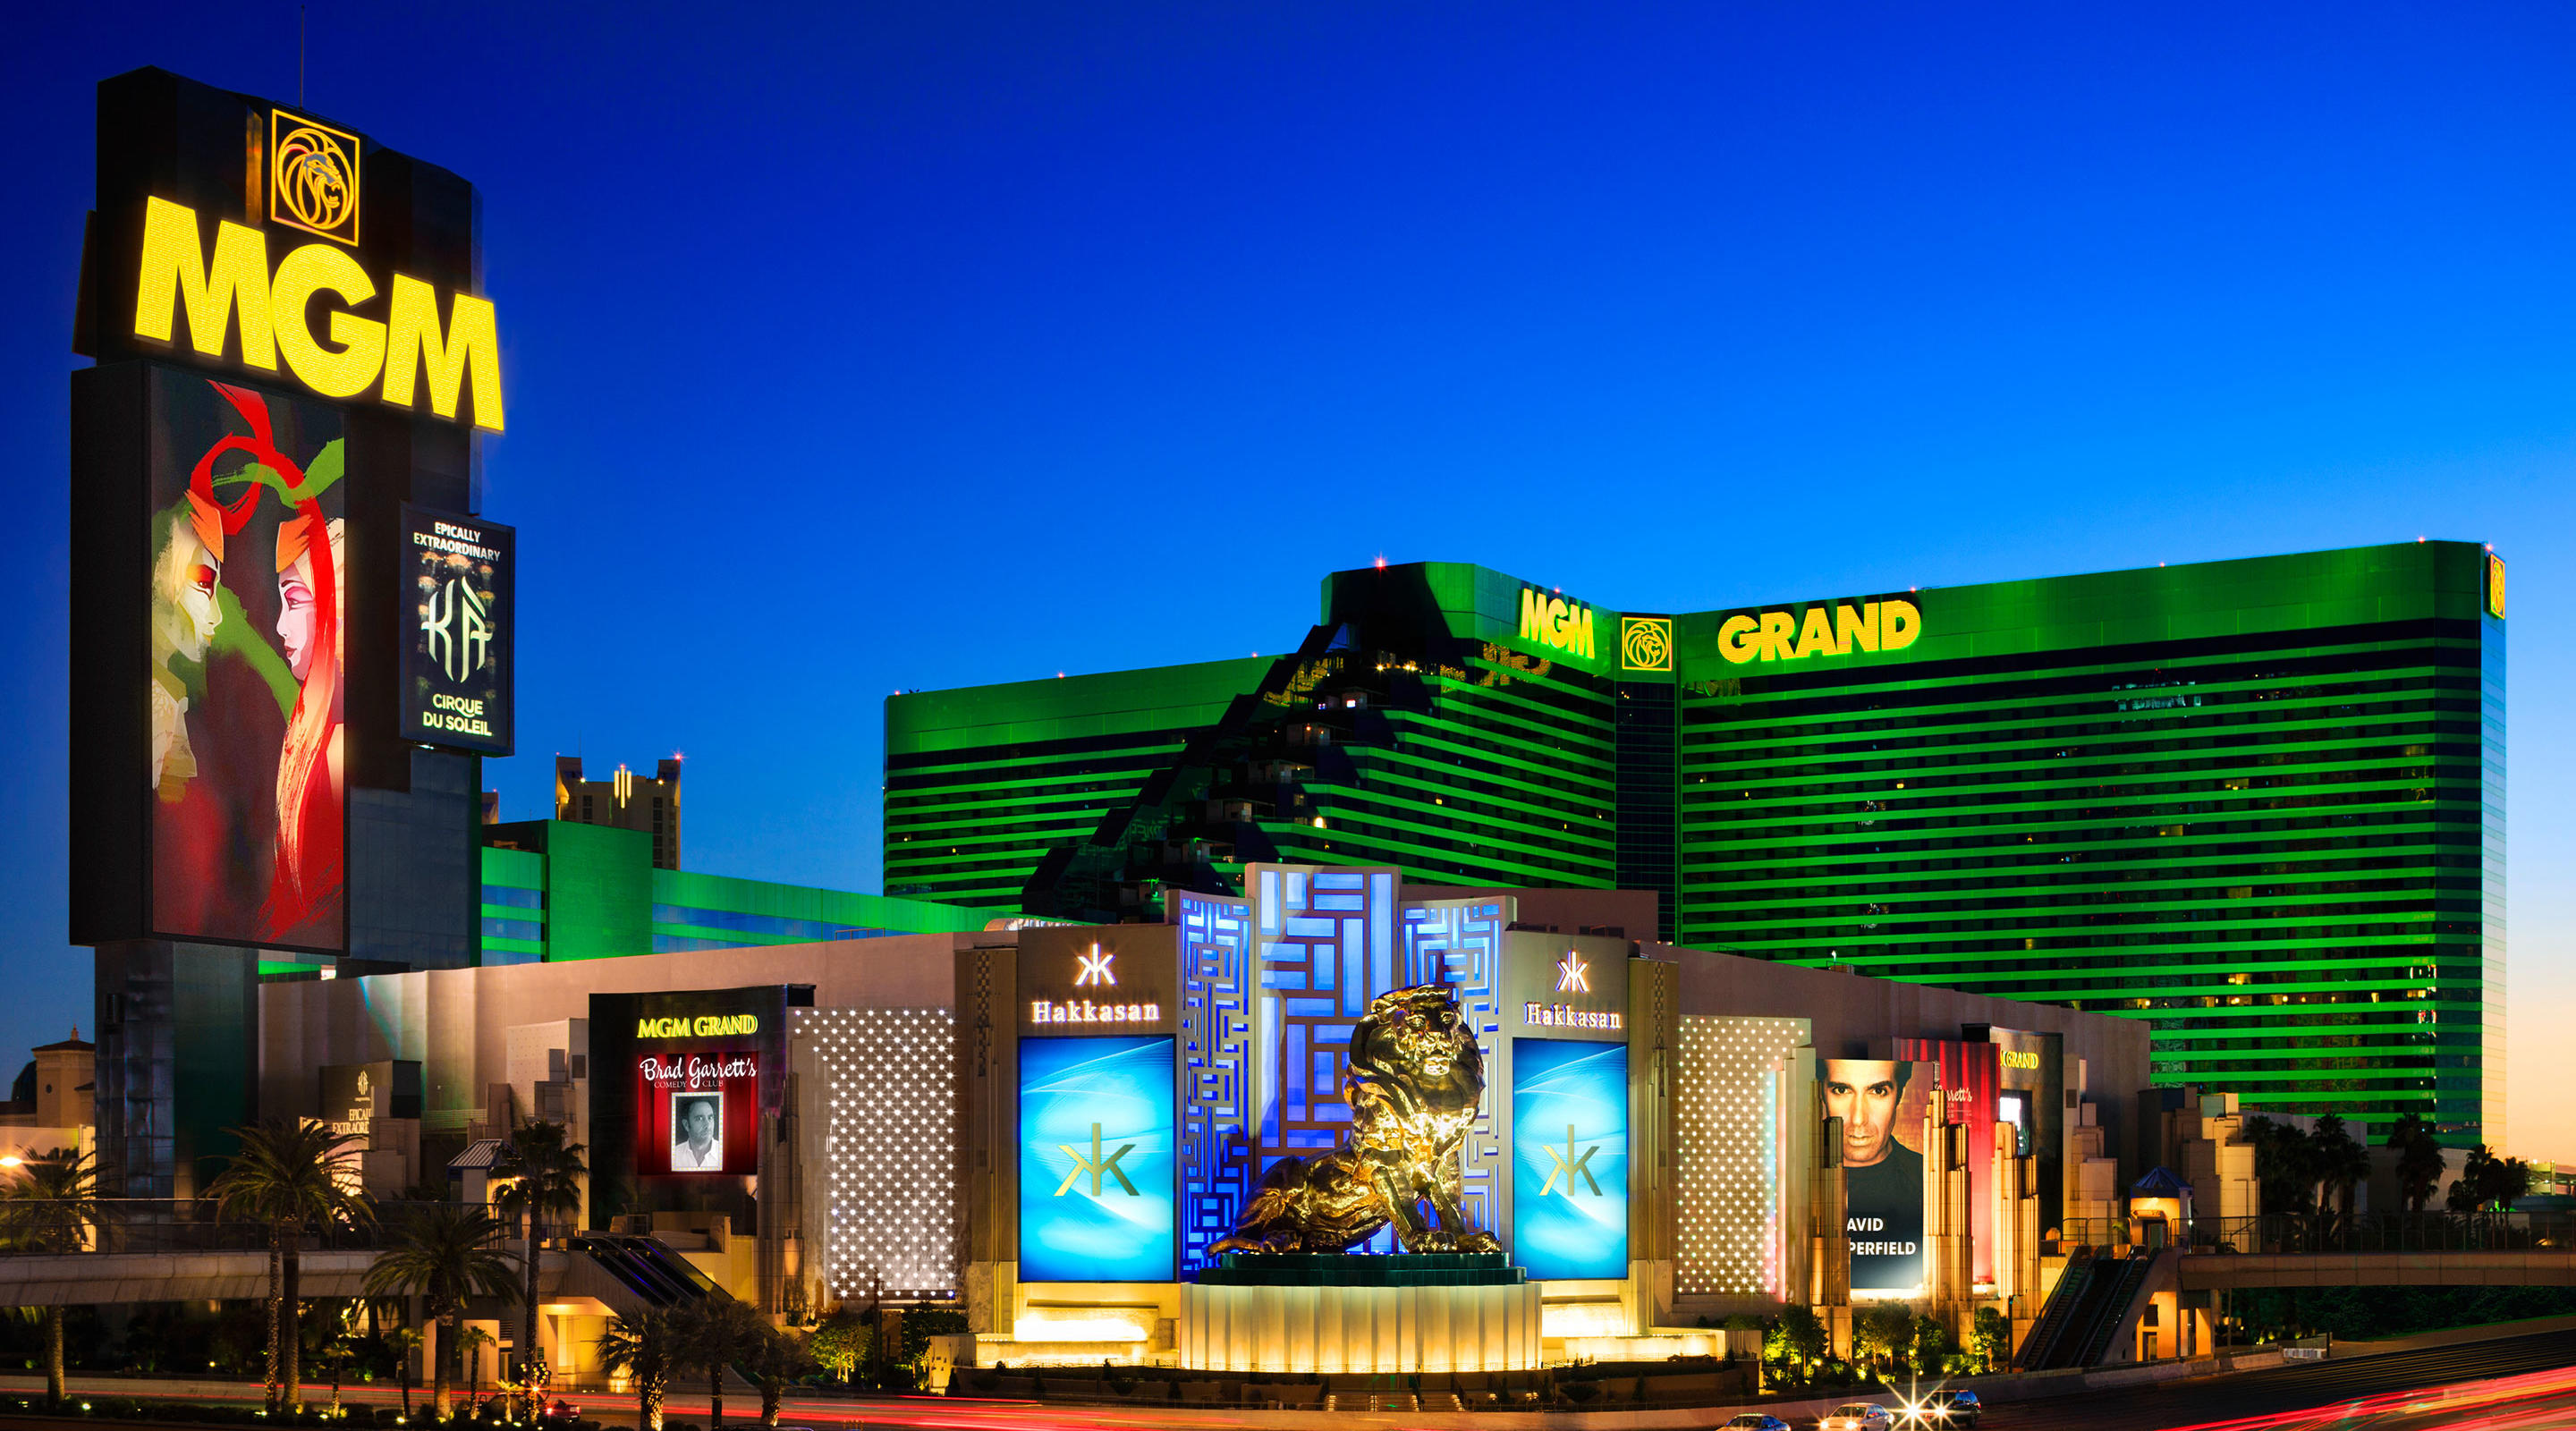 Grand casino las vegas nv